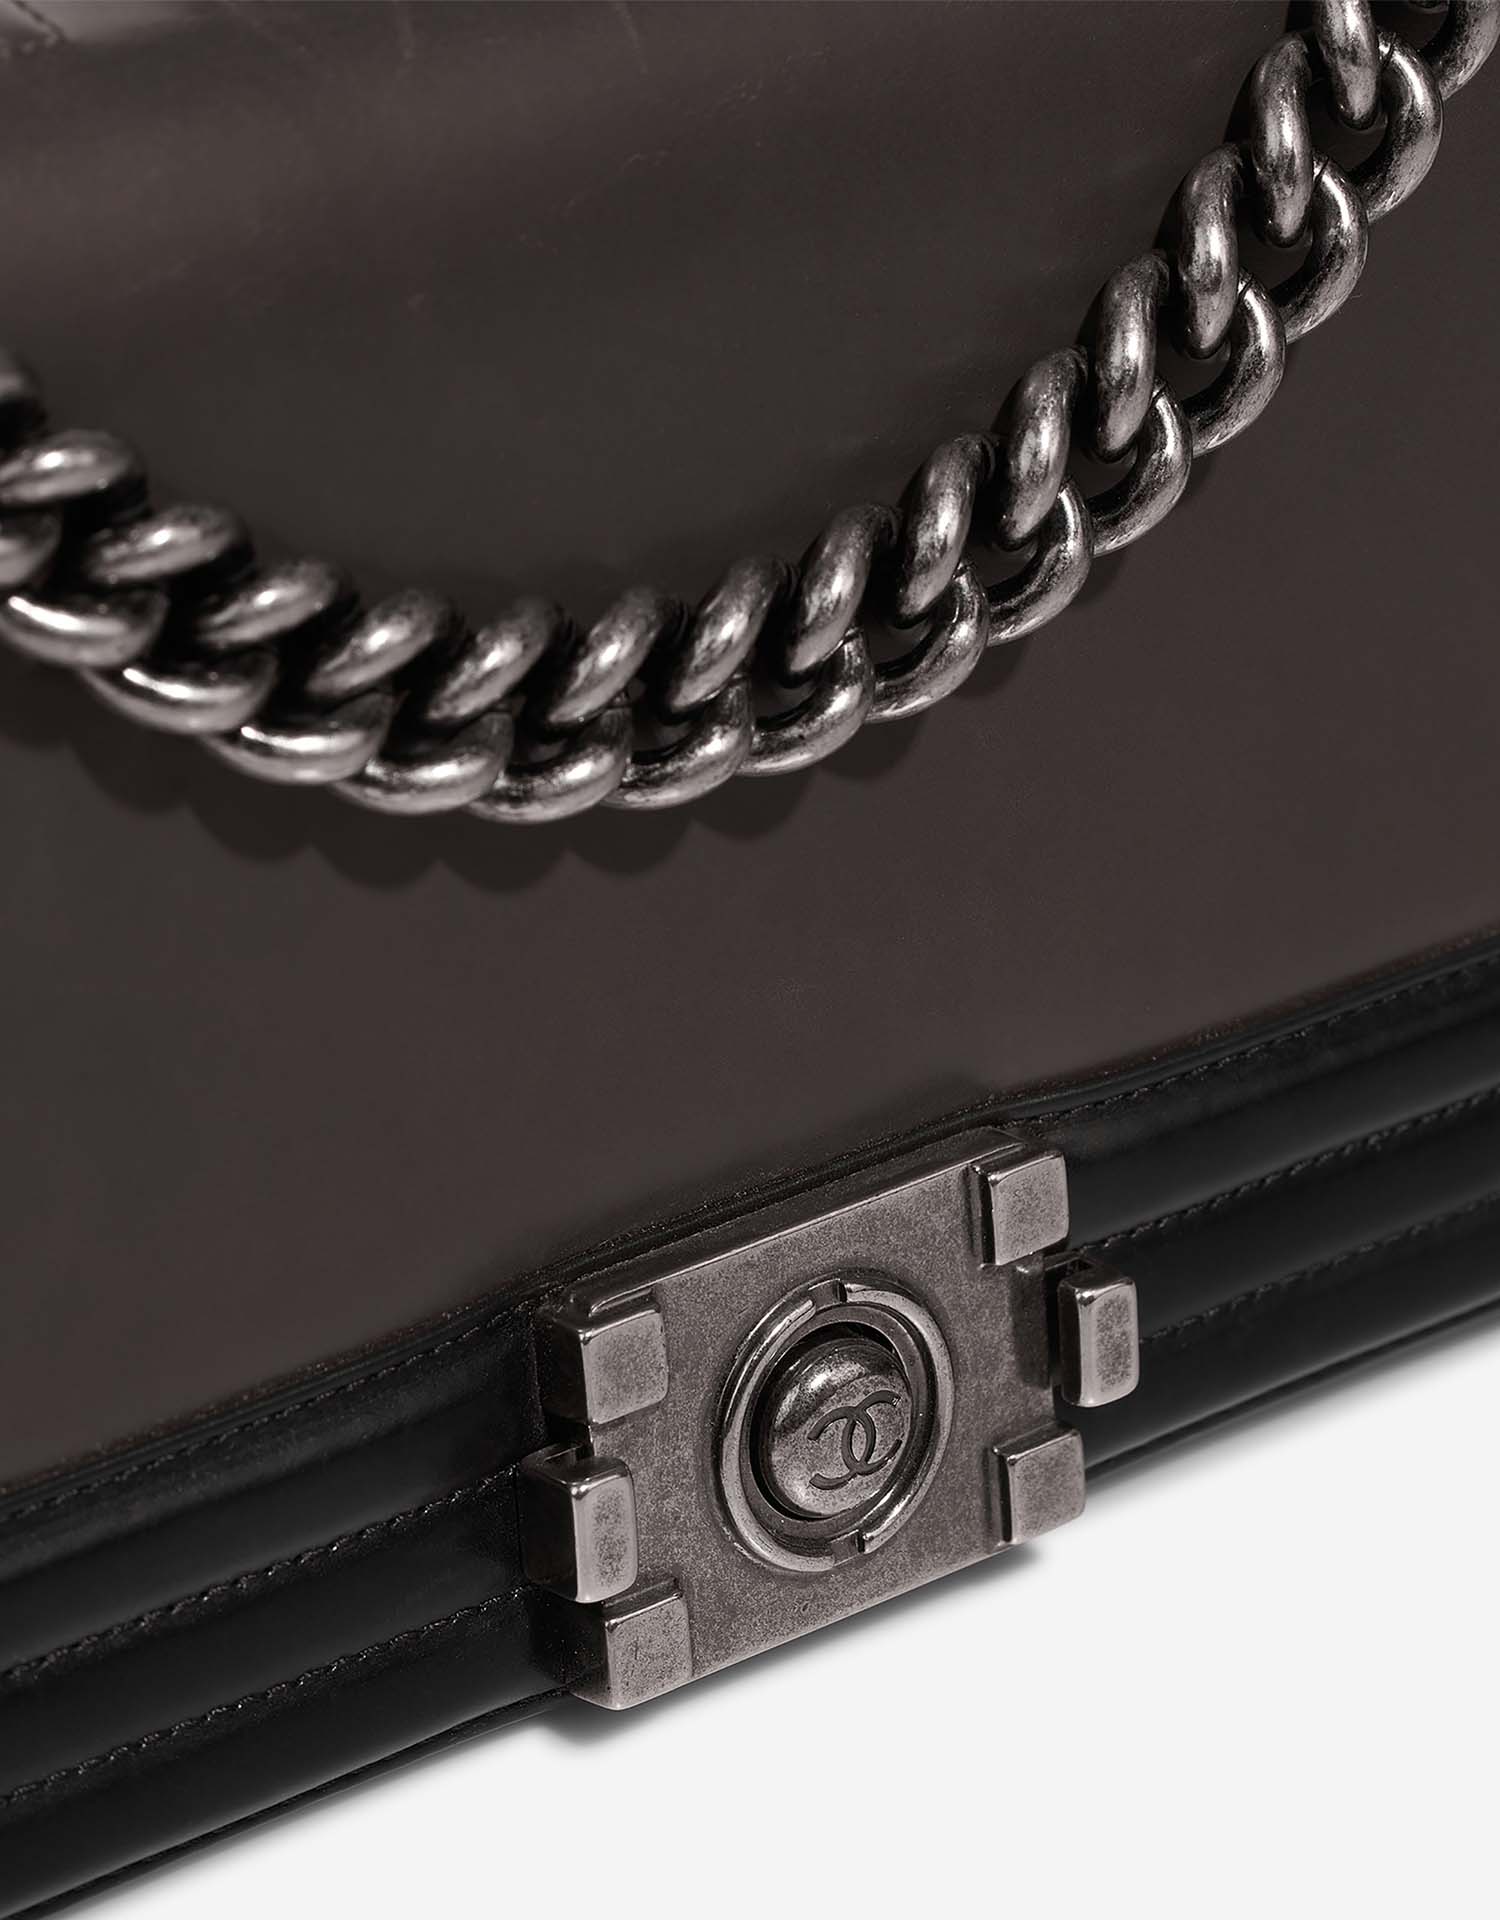 Chanel Boy OldMedium Schwarz-Grau Verschluss-System | Verkaufen Sie Ihre Designer-Tasche auf Saclab.com